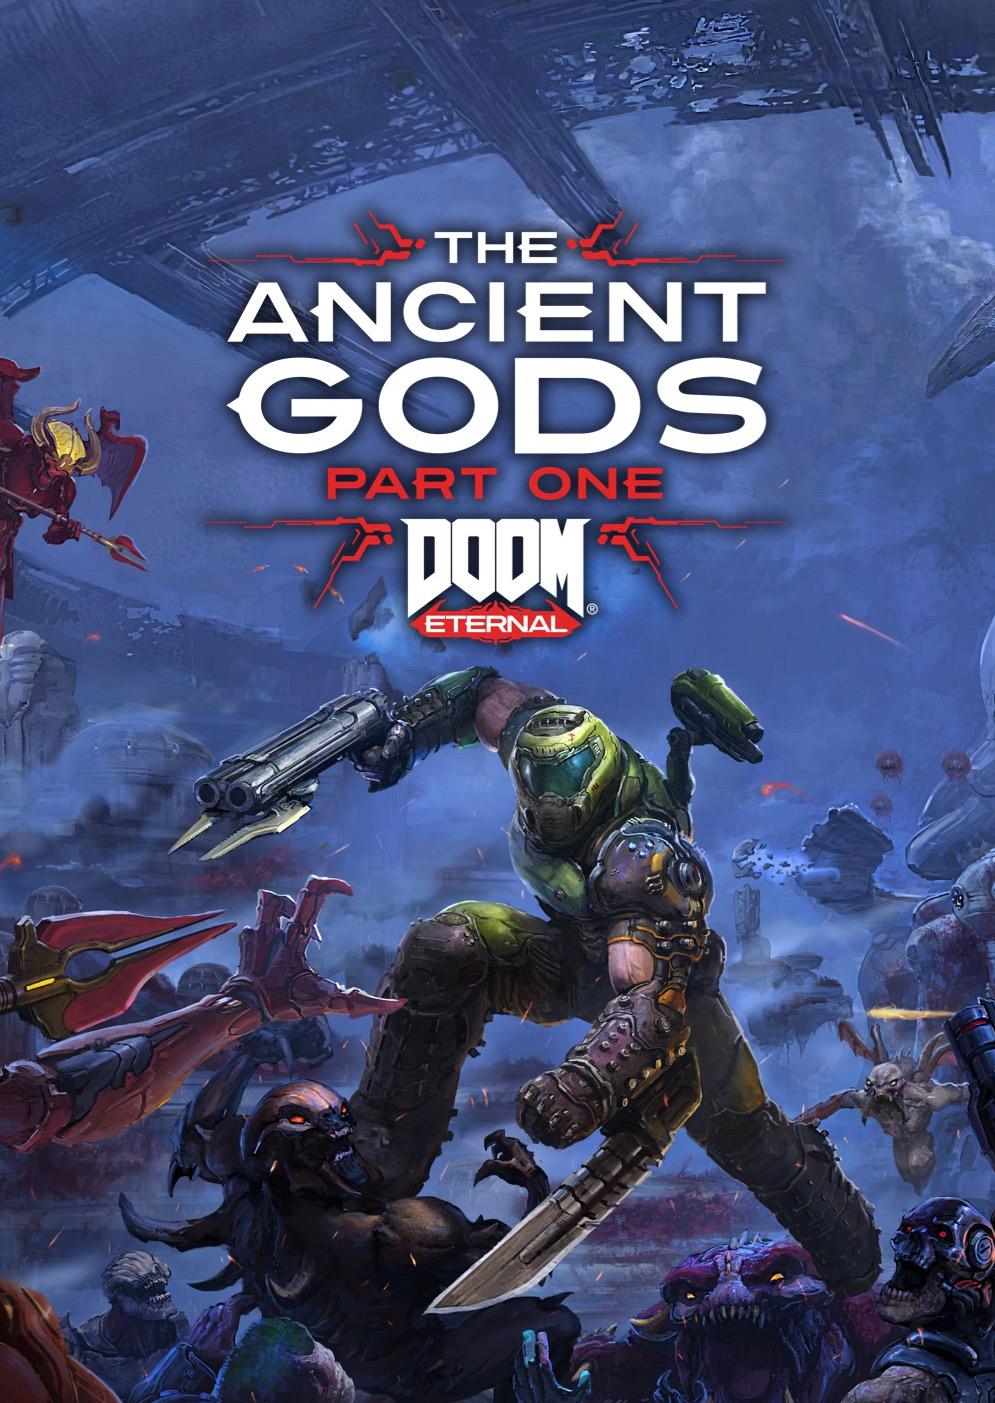 DOOM Eternal: The Ancient Gods